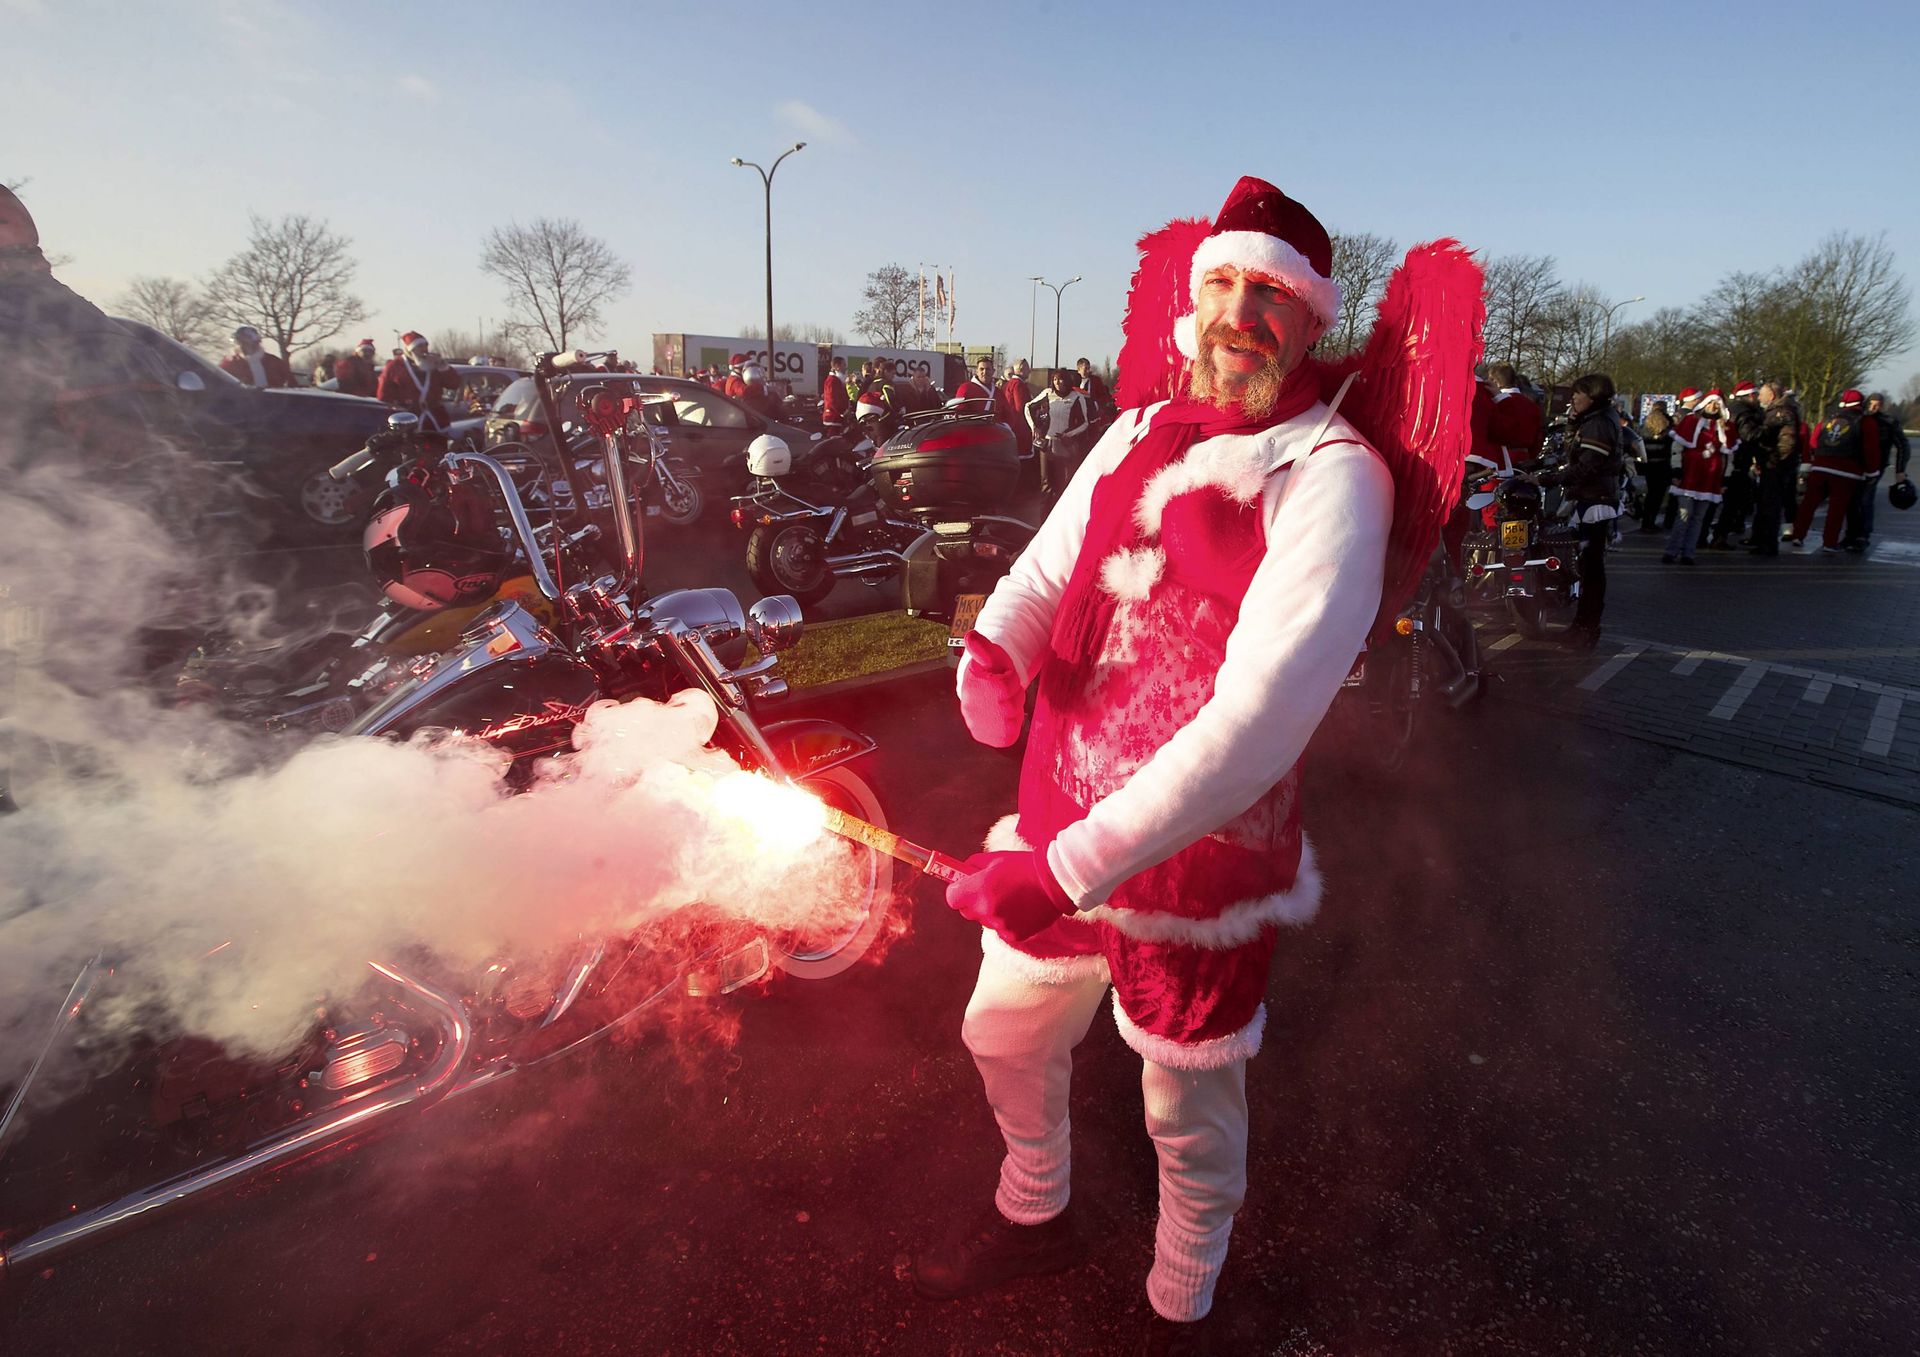 Un des participants, solide motard qui a préféré le déguisement de mère Noël, a fait impression